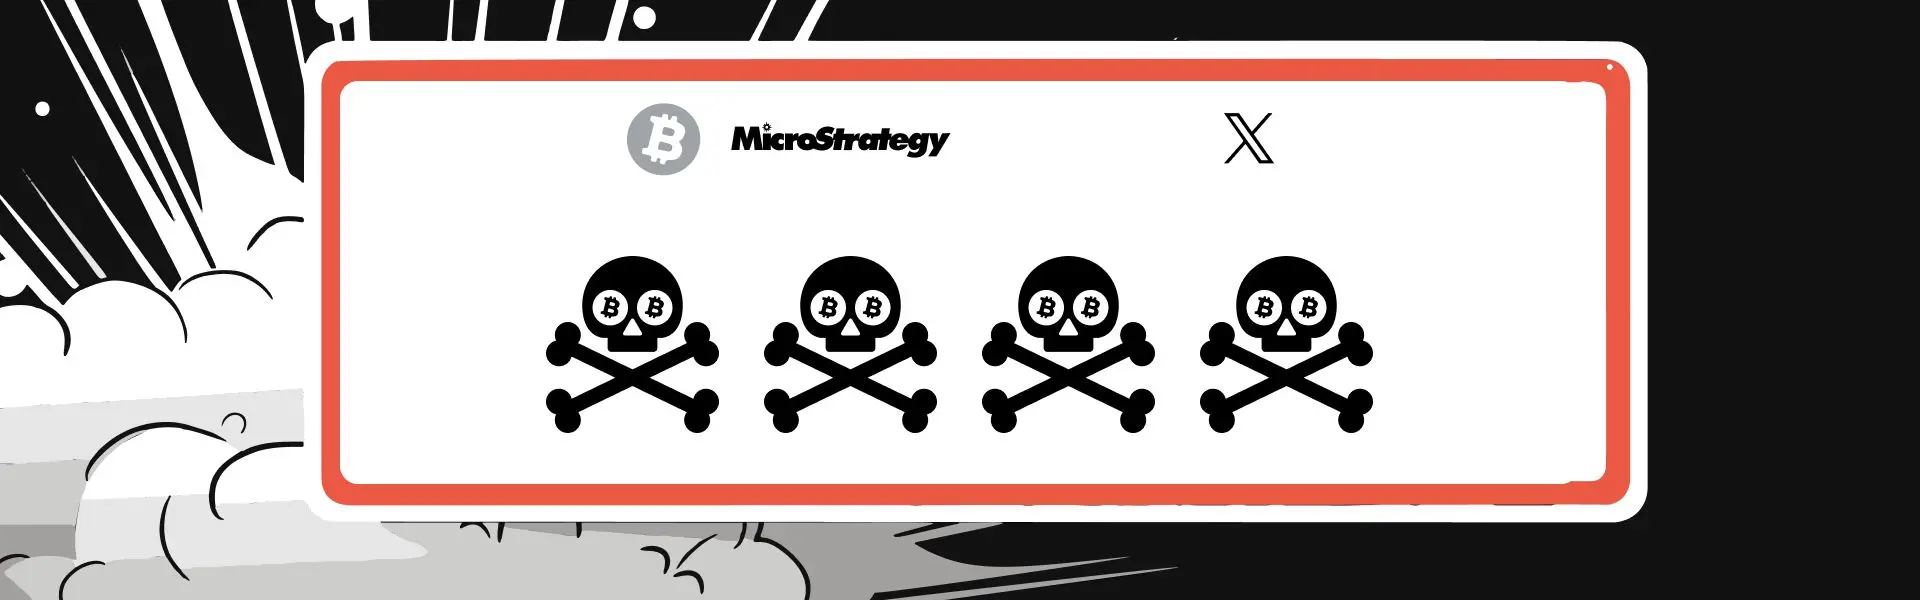 Акаунт компанії MicroStrategy у соціальній мережі X було взламано.